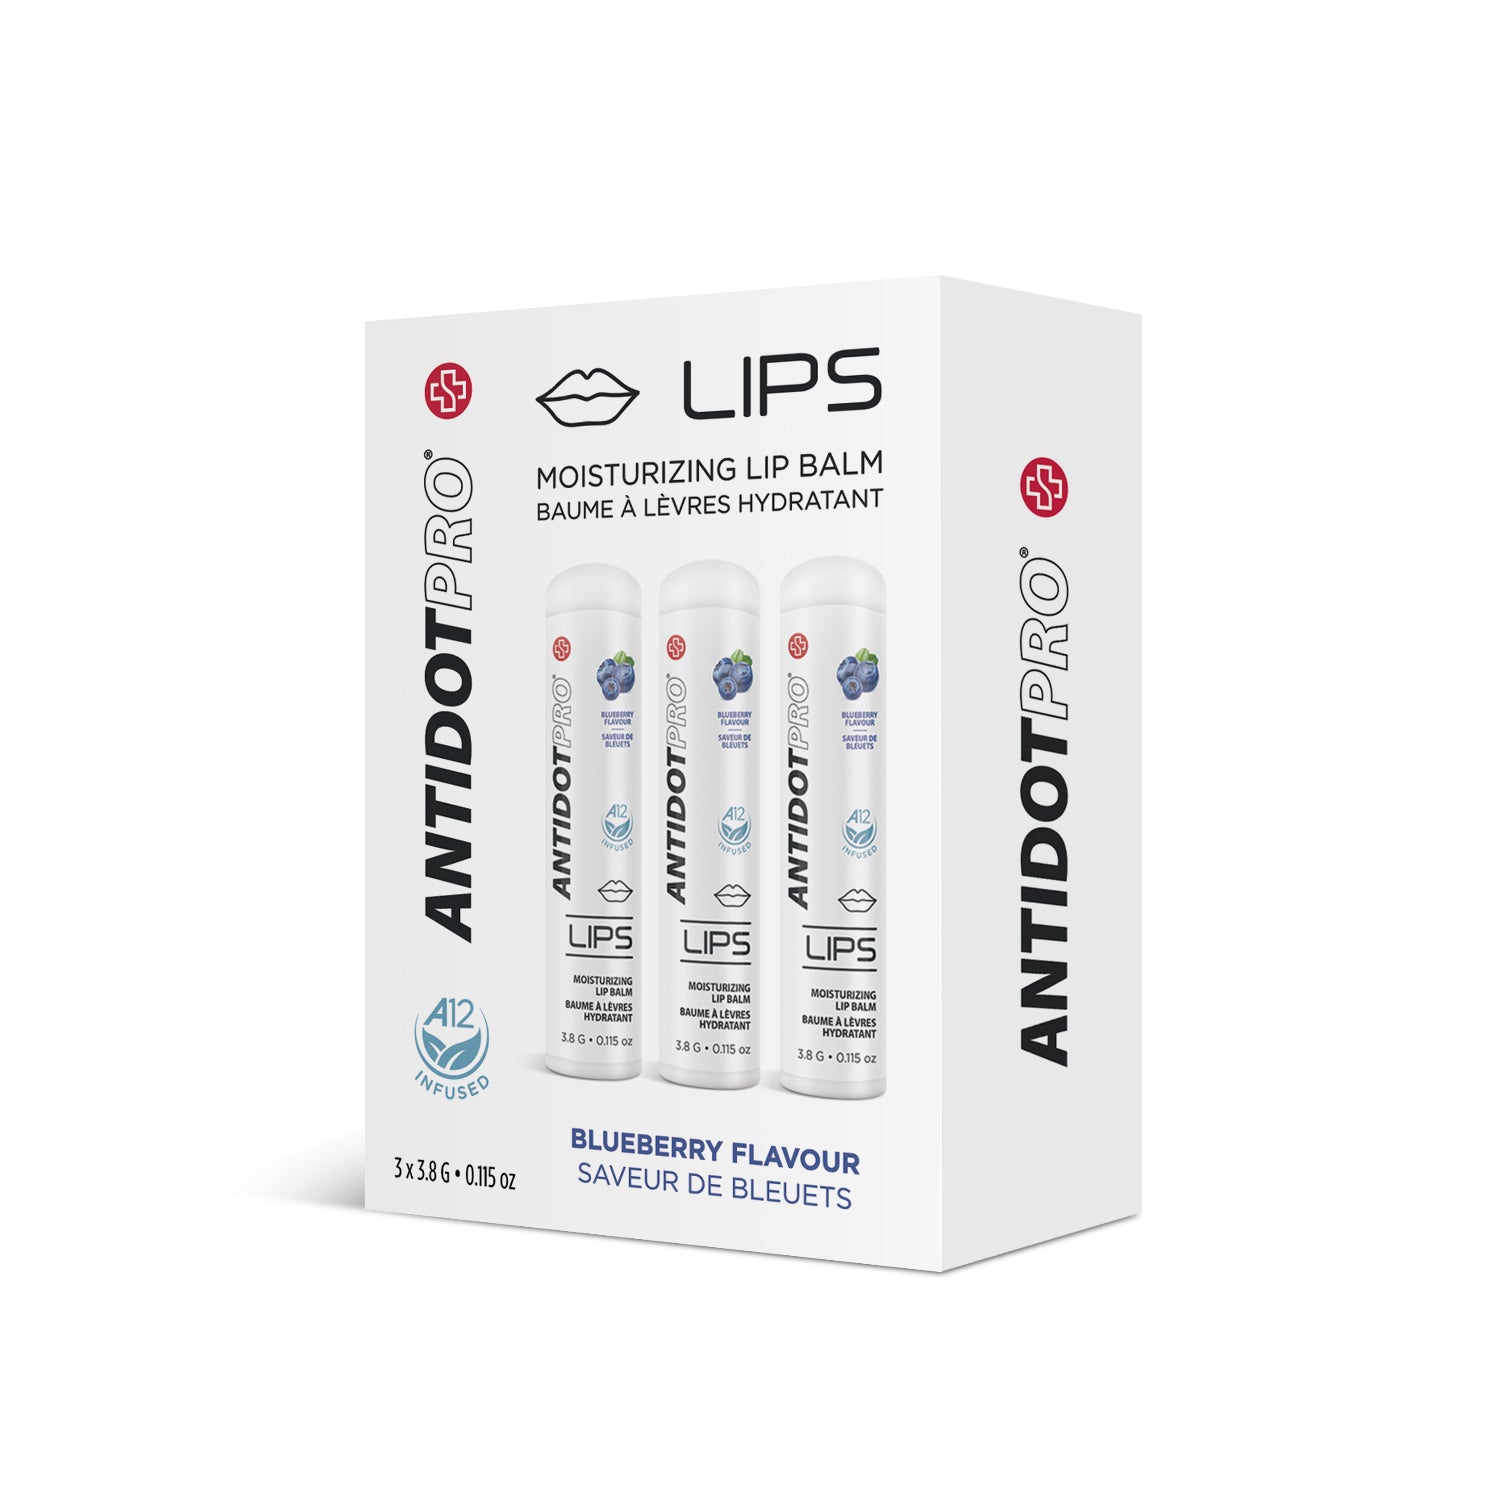 AntidotPro Lips (Blueberry) - 3 x 3.8G [ANTI-R-BLLIPS-PACK]